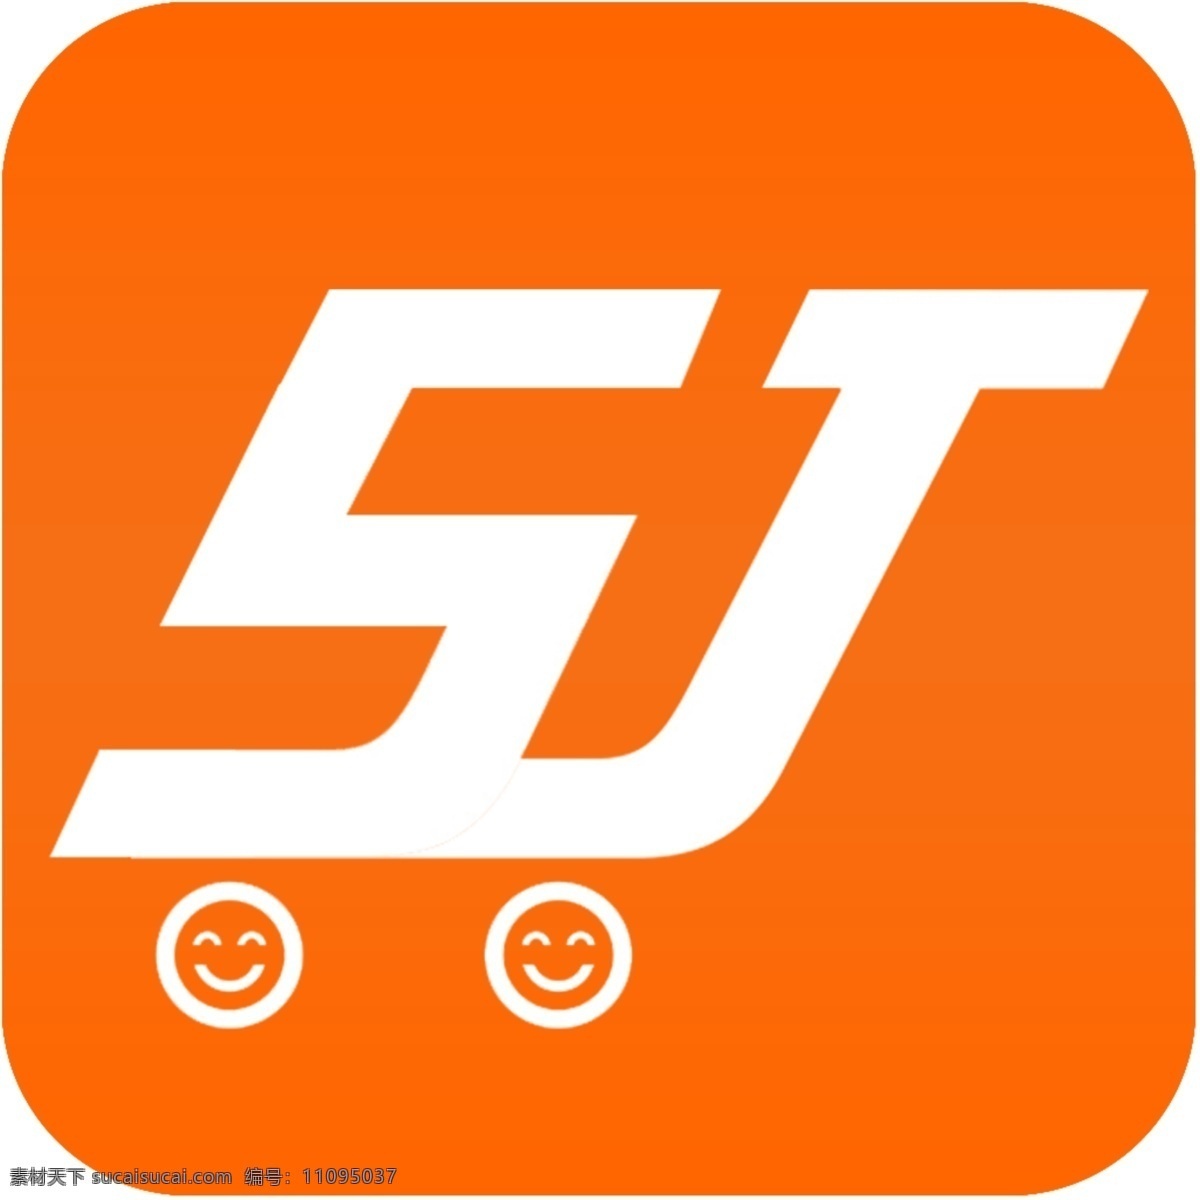 字母 sj 手机 超市 图标 源文件 logo 标志 标准 橙色 抽象 创意 创作 购物车 几何 字母sj 简单 简洁 精美 形状 psd源文件 logo设计